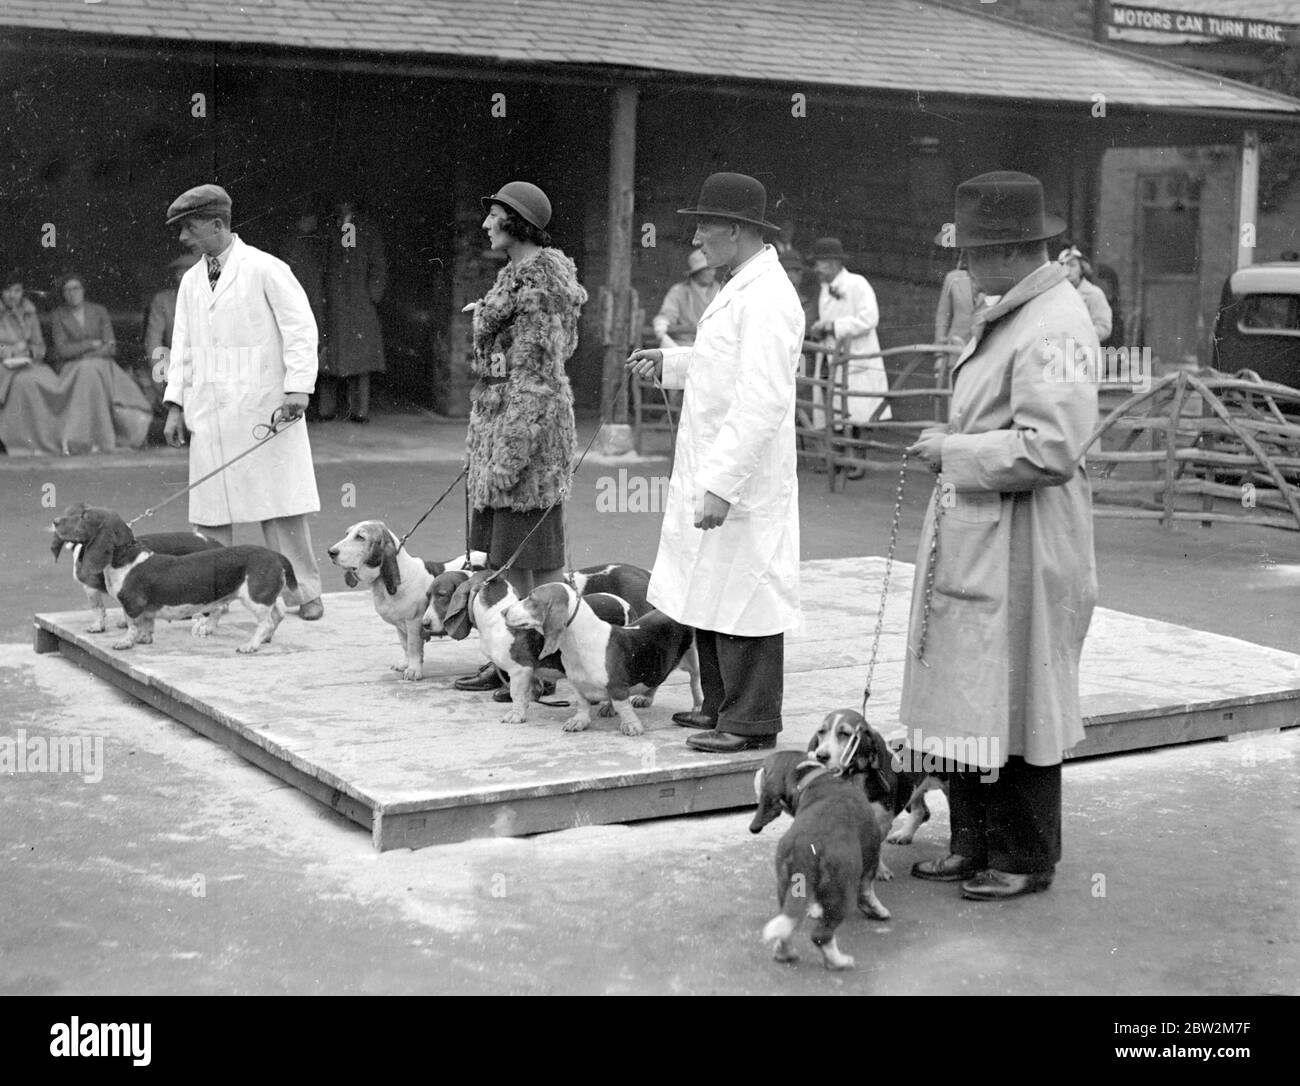 Spettacolo Basset Hounds al White Lion Hotel, Banbury. Hounds nel ring con la valutazione in corso. 24 ottobre 1934 Foto Stock